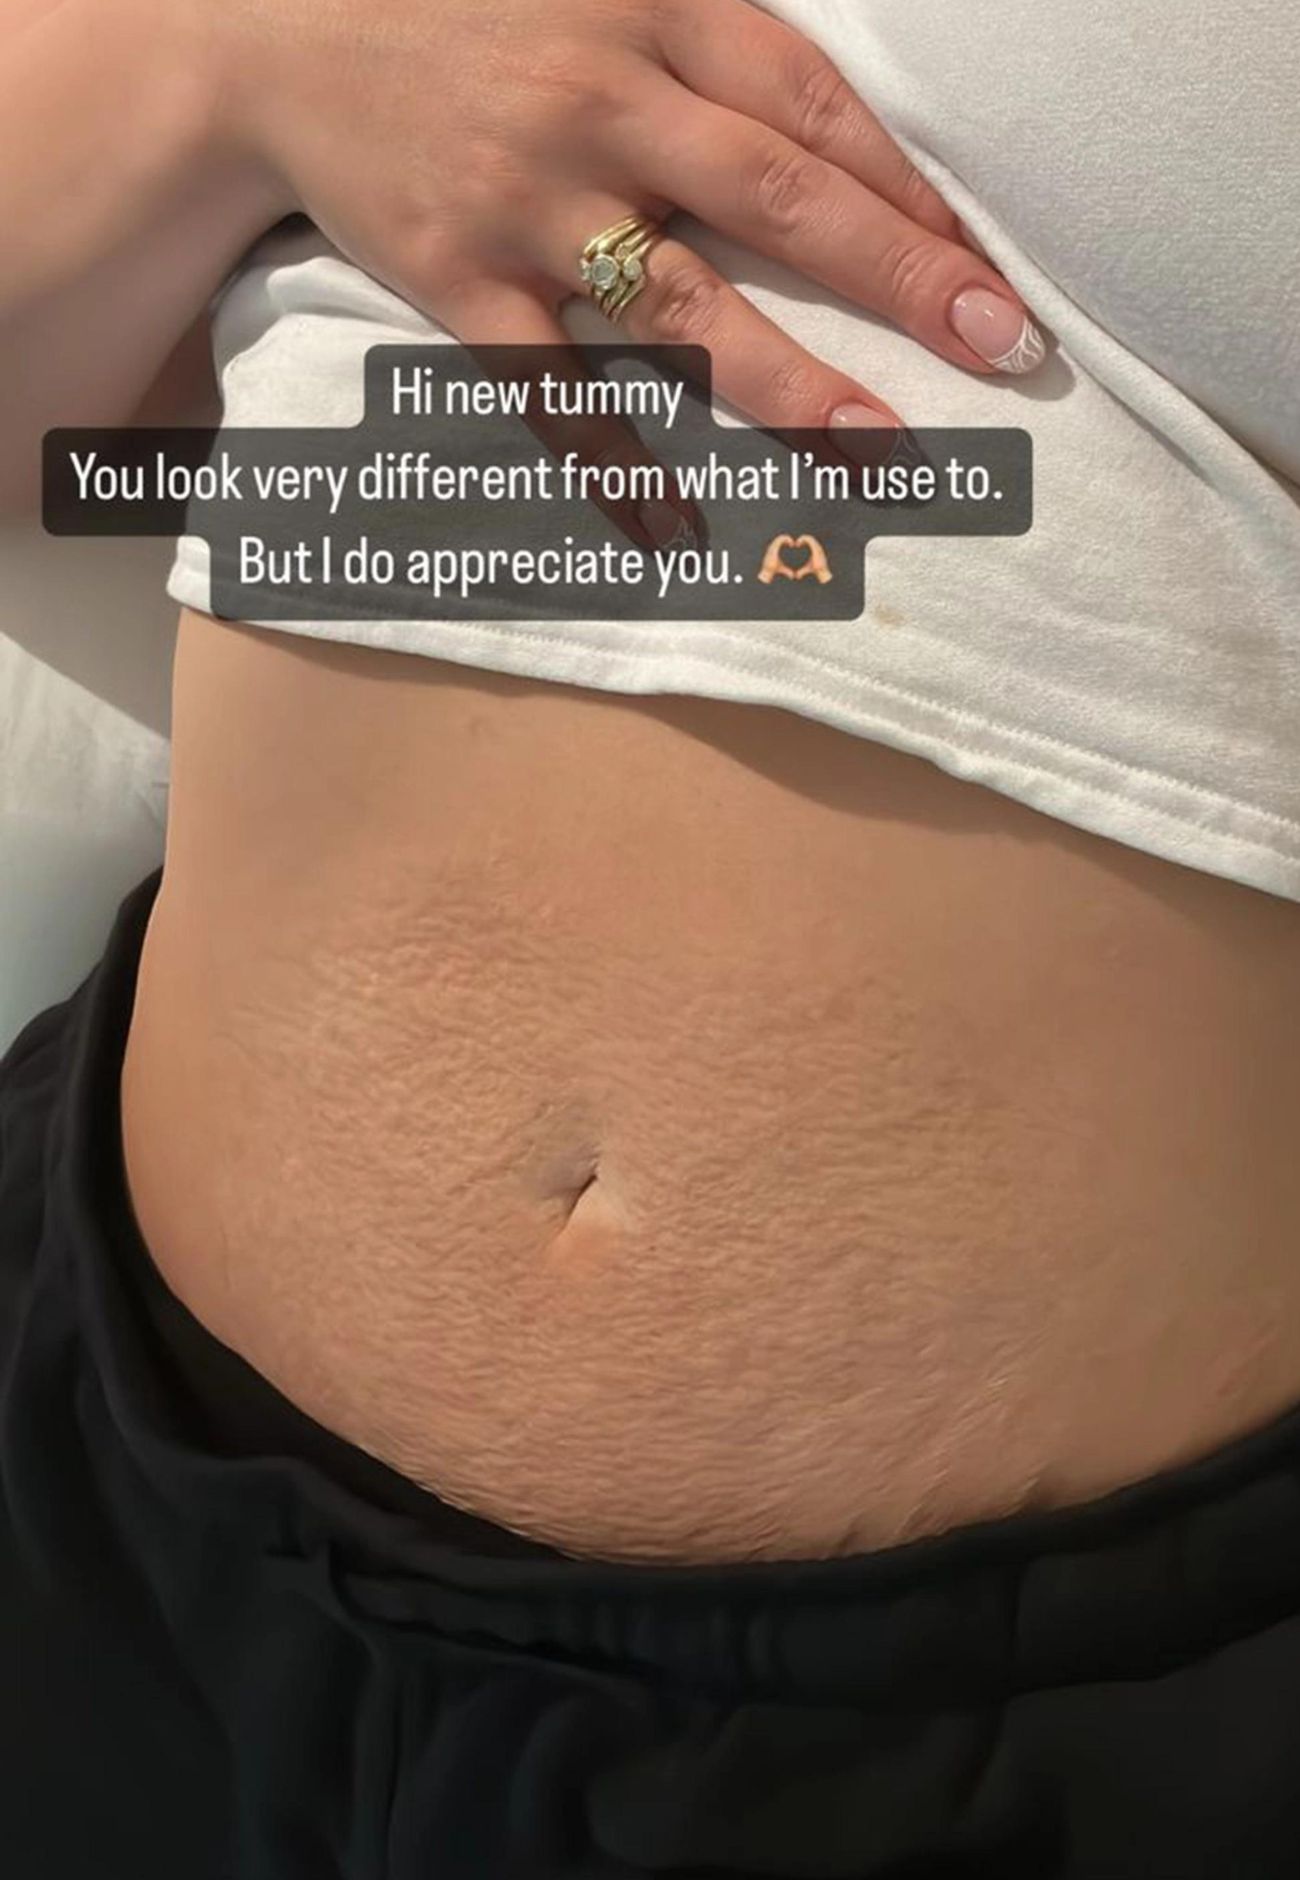 Ashley Graham Shares Her Very Different Postpartum Tummy in New Selfie -  POPSUGAR Australia